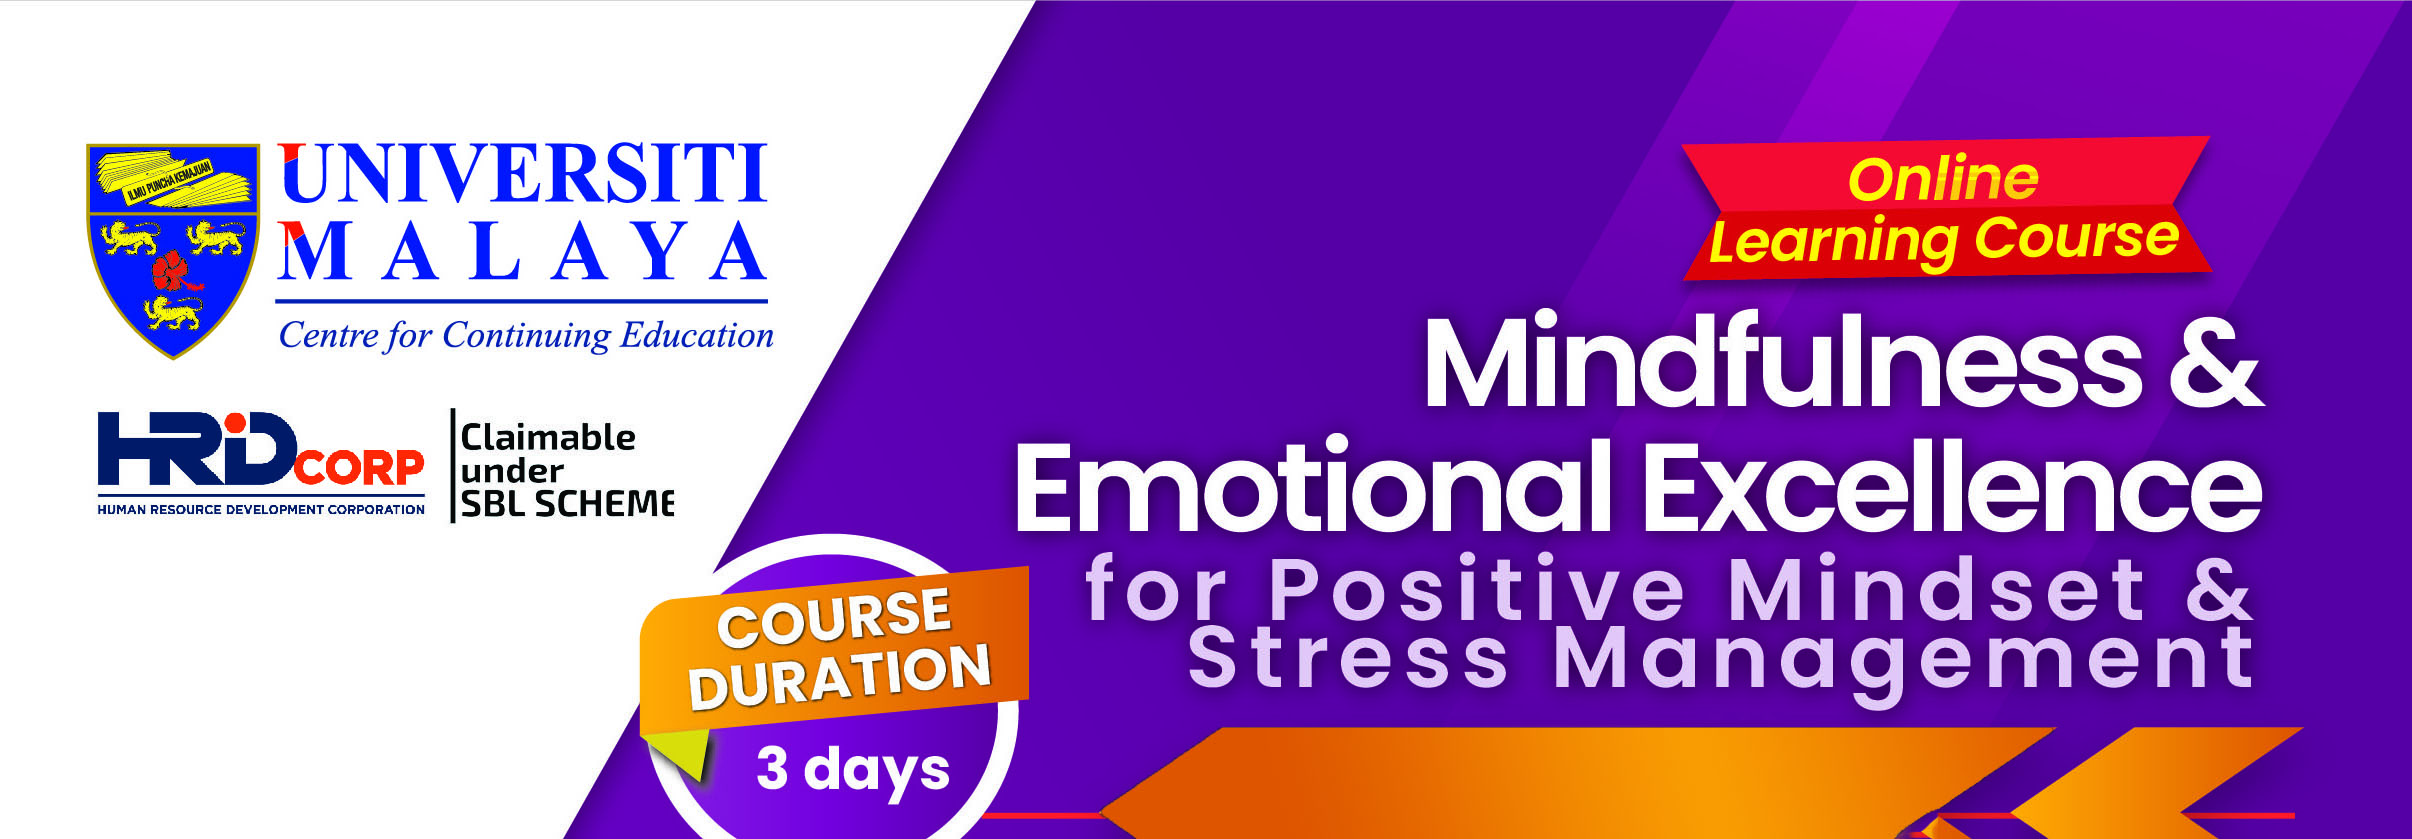 Mindfulness & Emotional Excellence for Positive Mindset & Stress Management